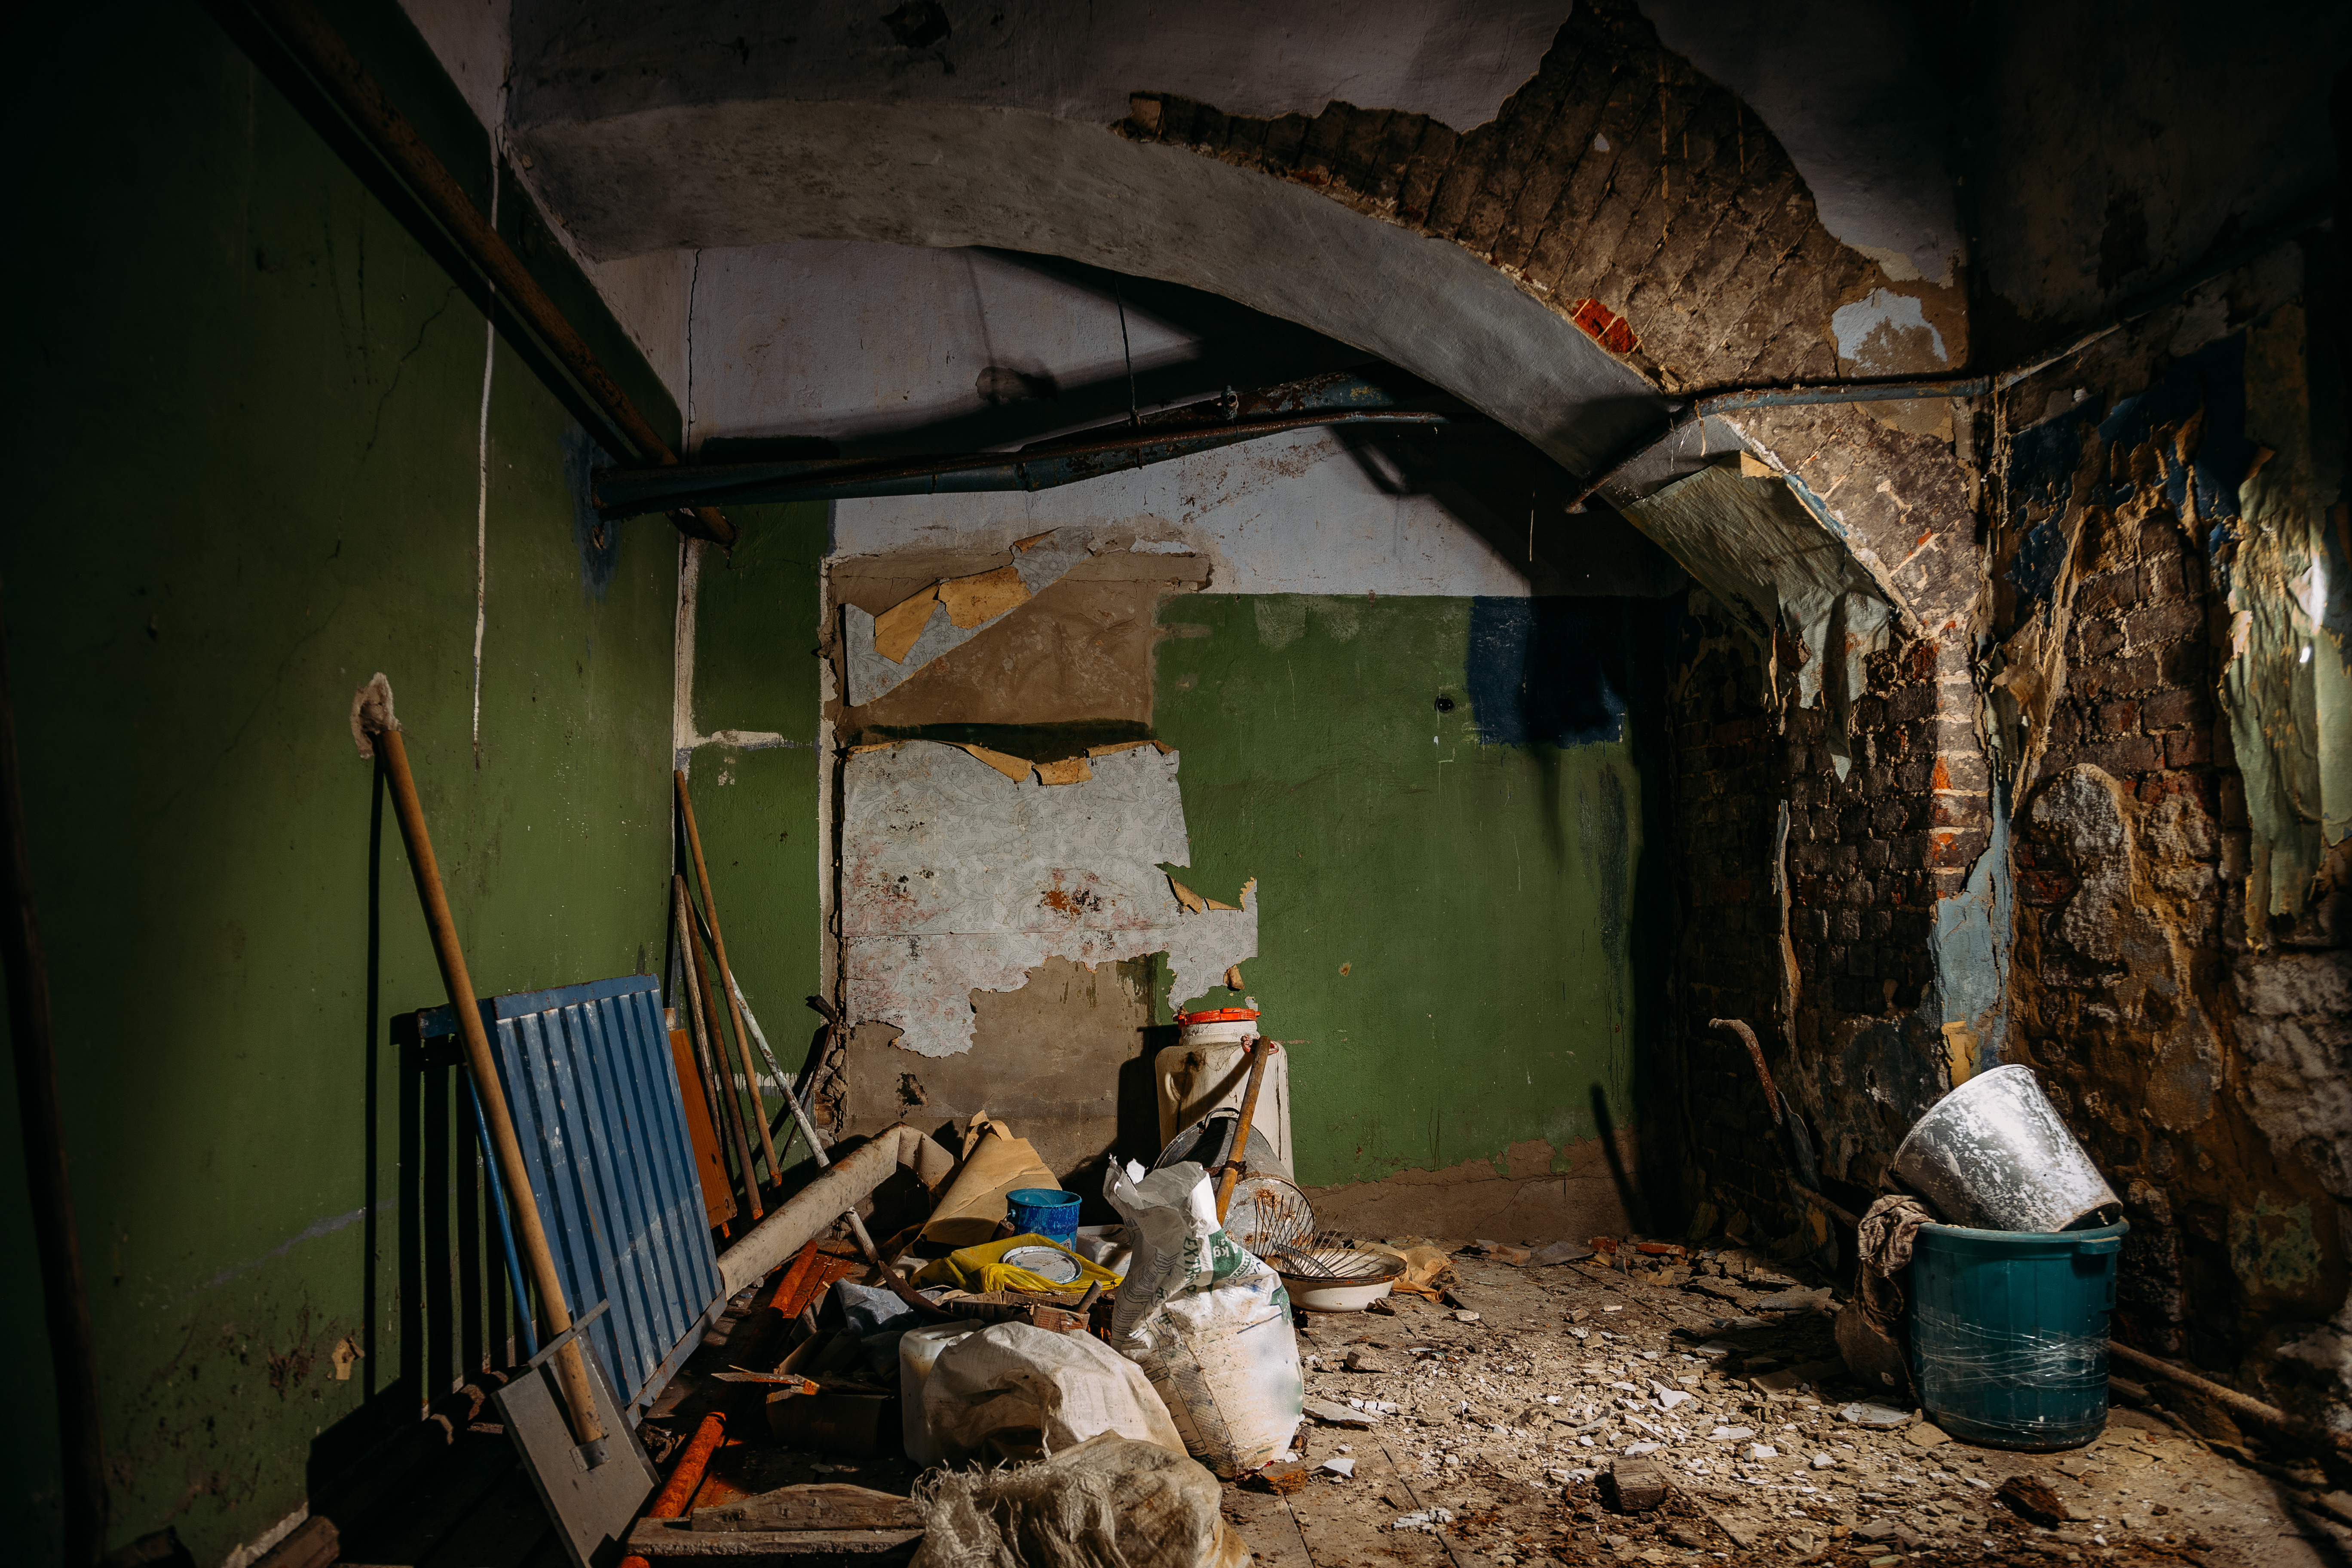 A dirty basement | Source: Shutterstock